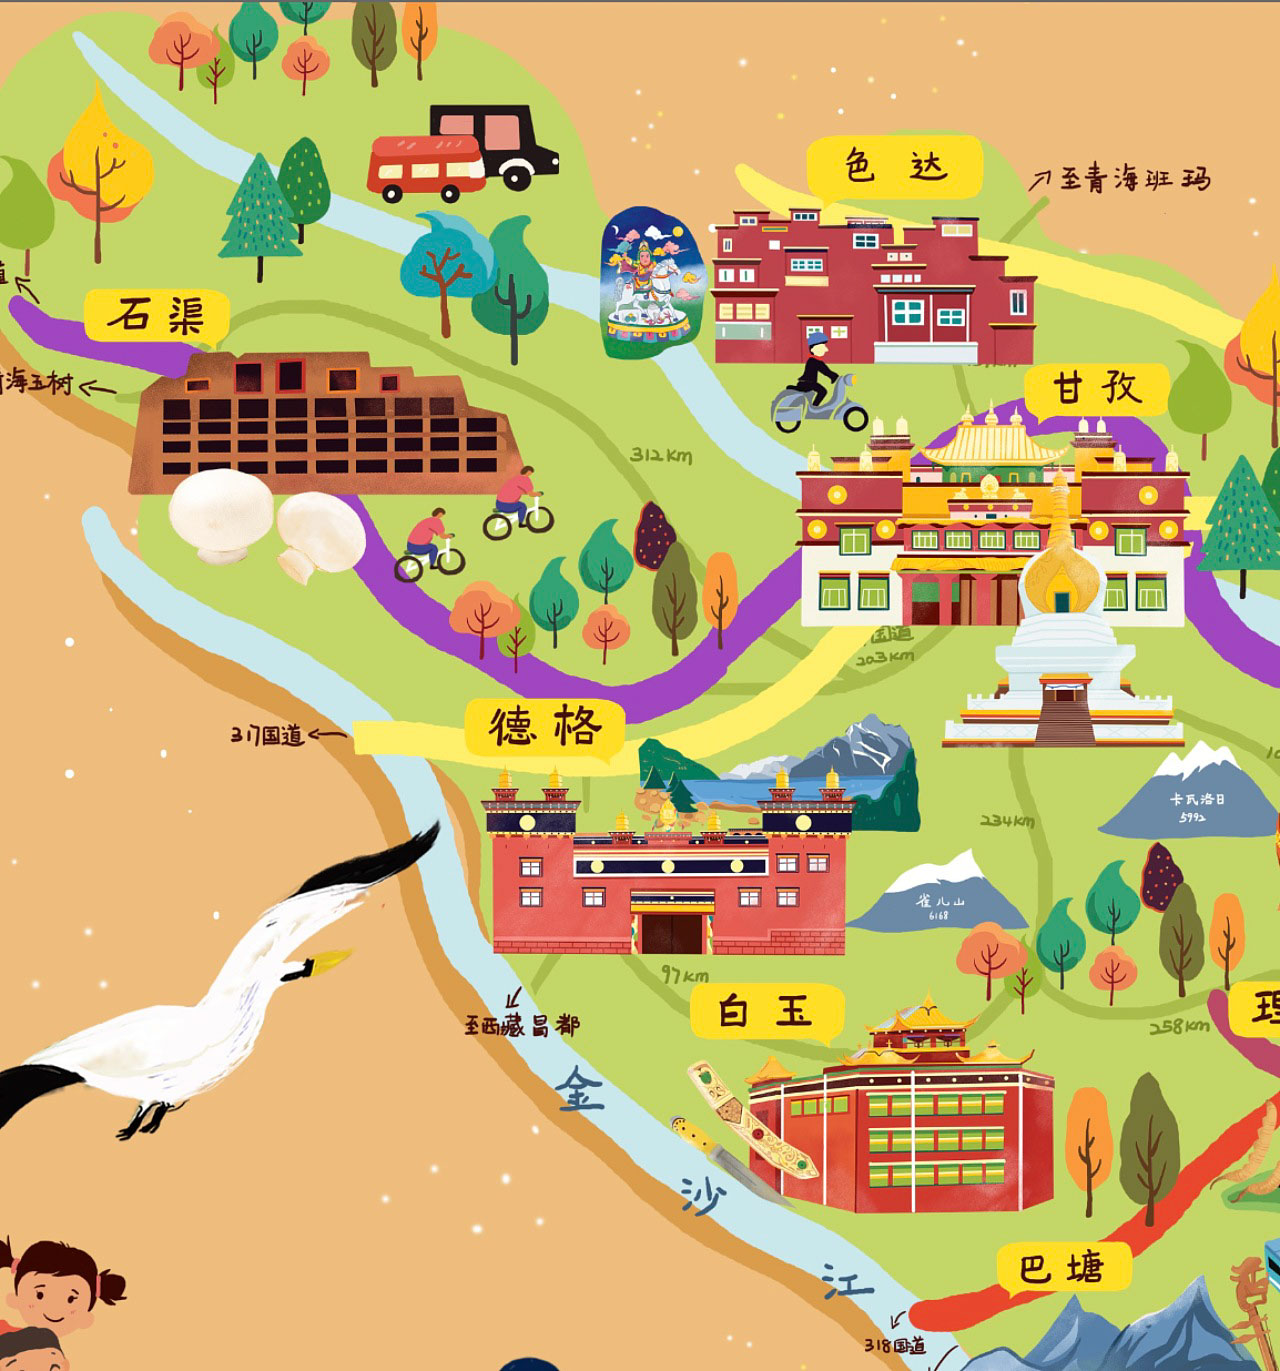 白鹭湖管理区手绘地图景区的文化宝库